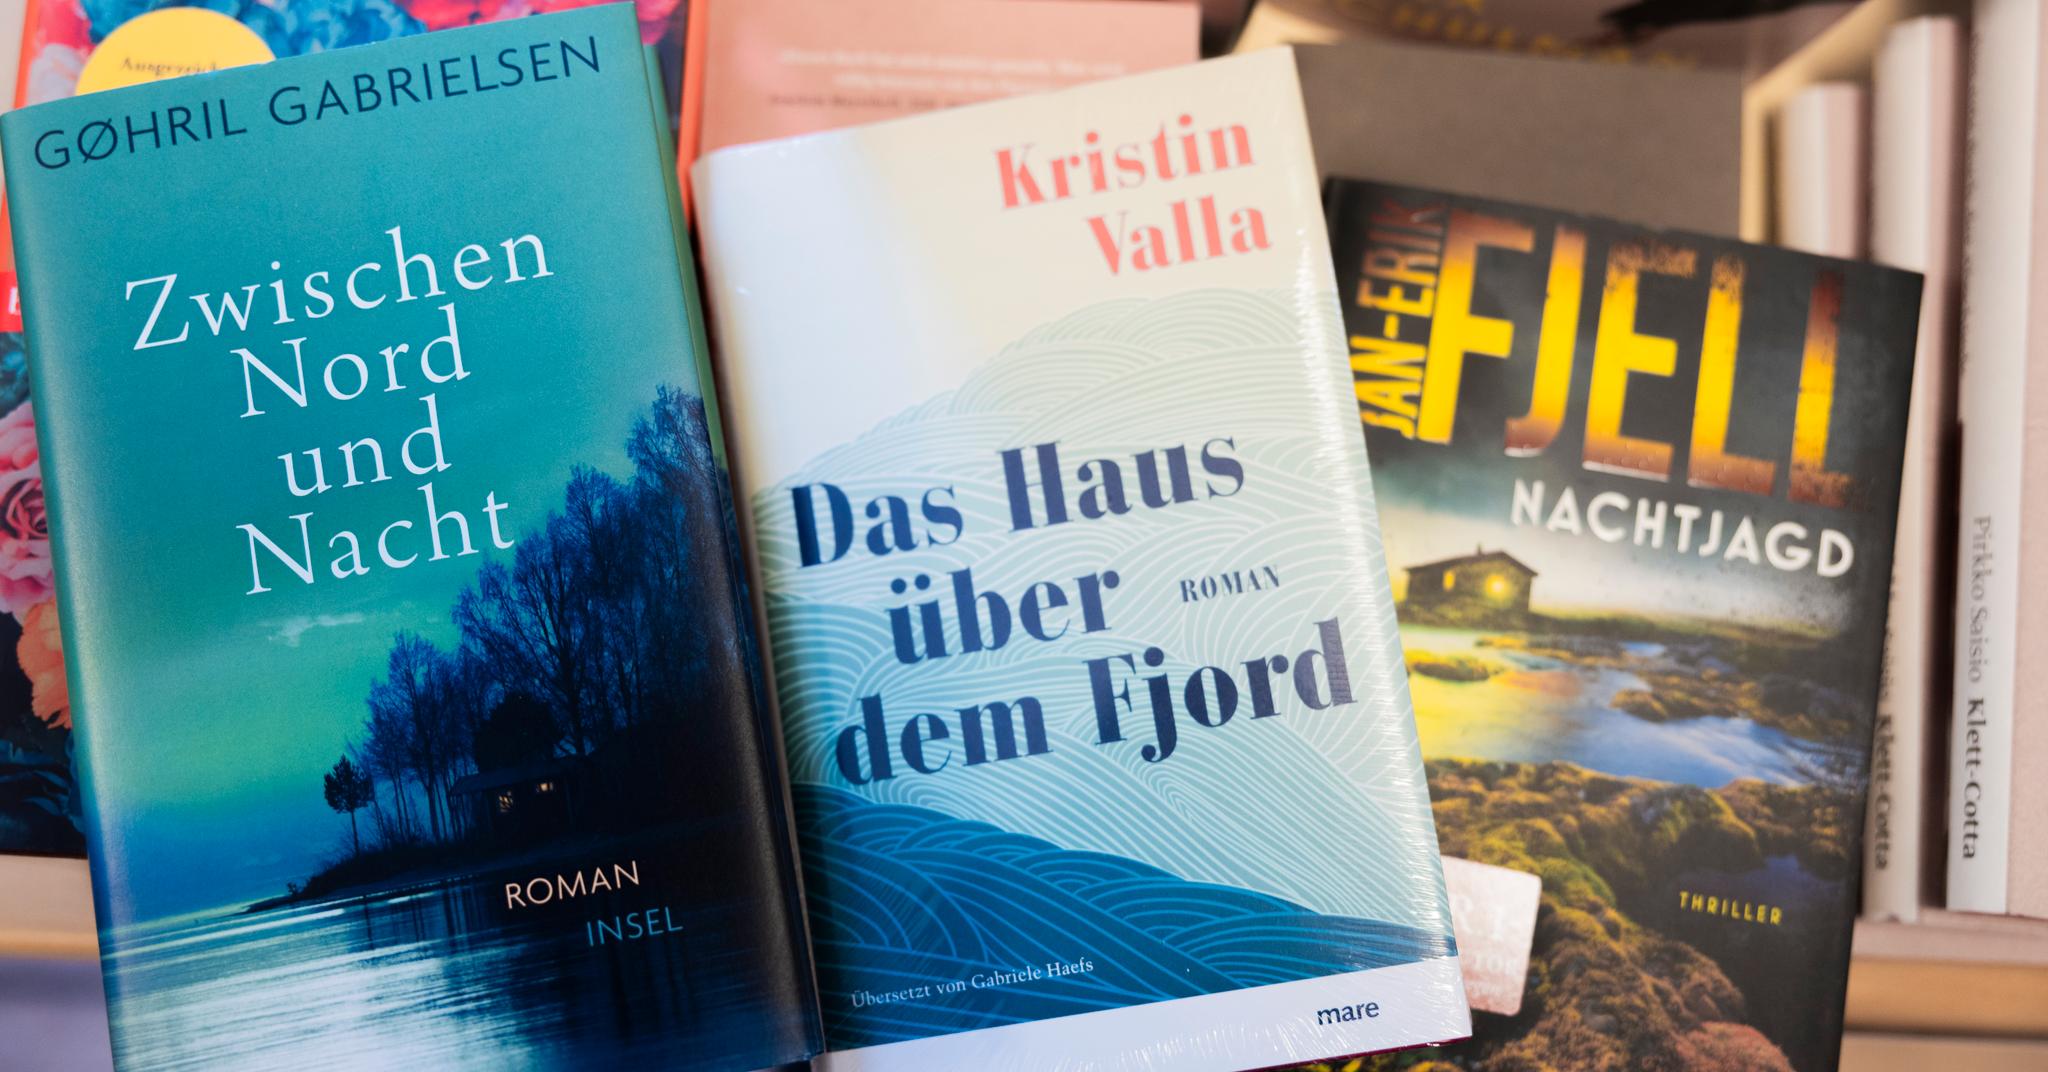 Skog, fjord, fjell og naust. Slik selger norsk litteratur godt i Tyskland.